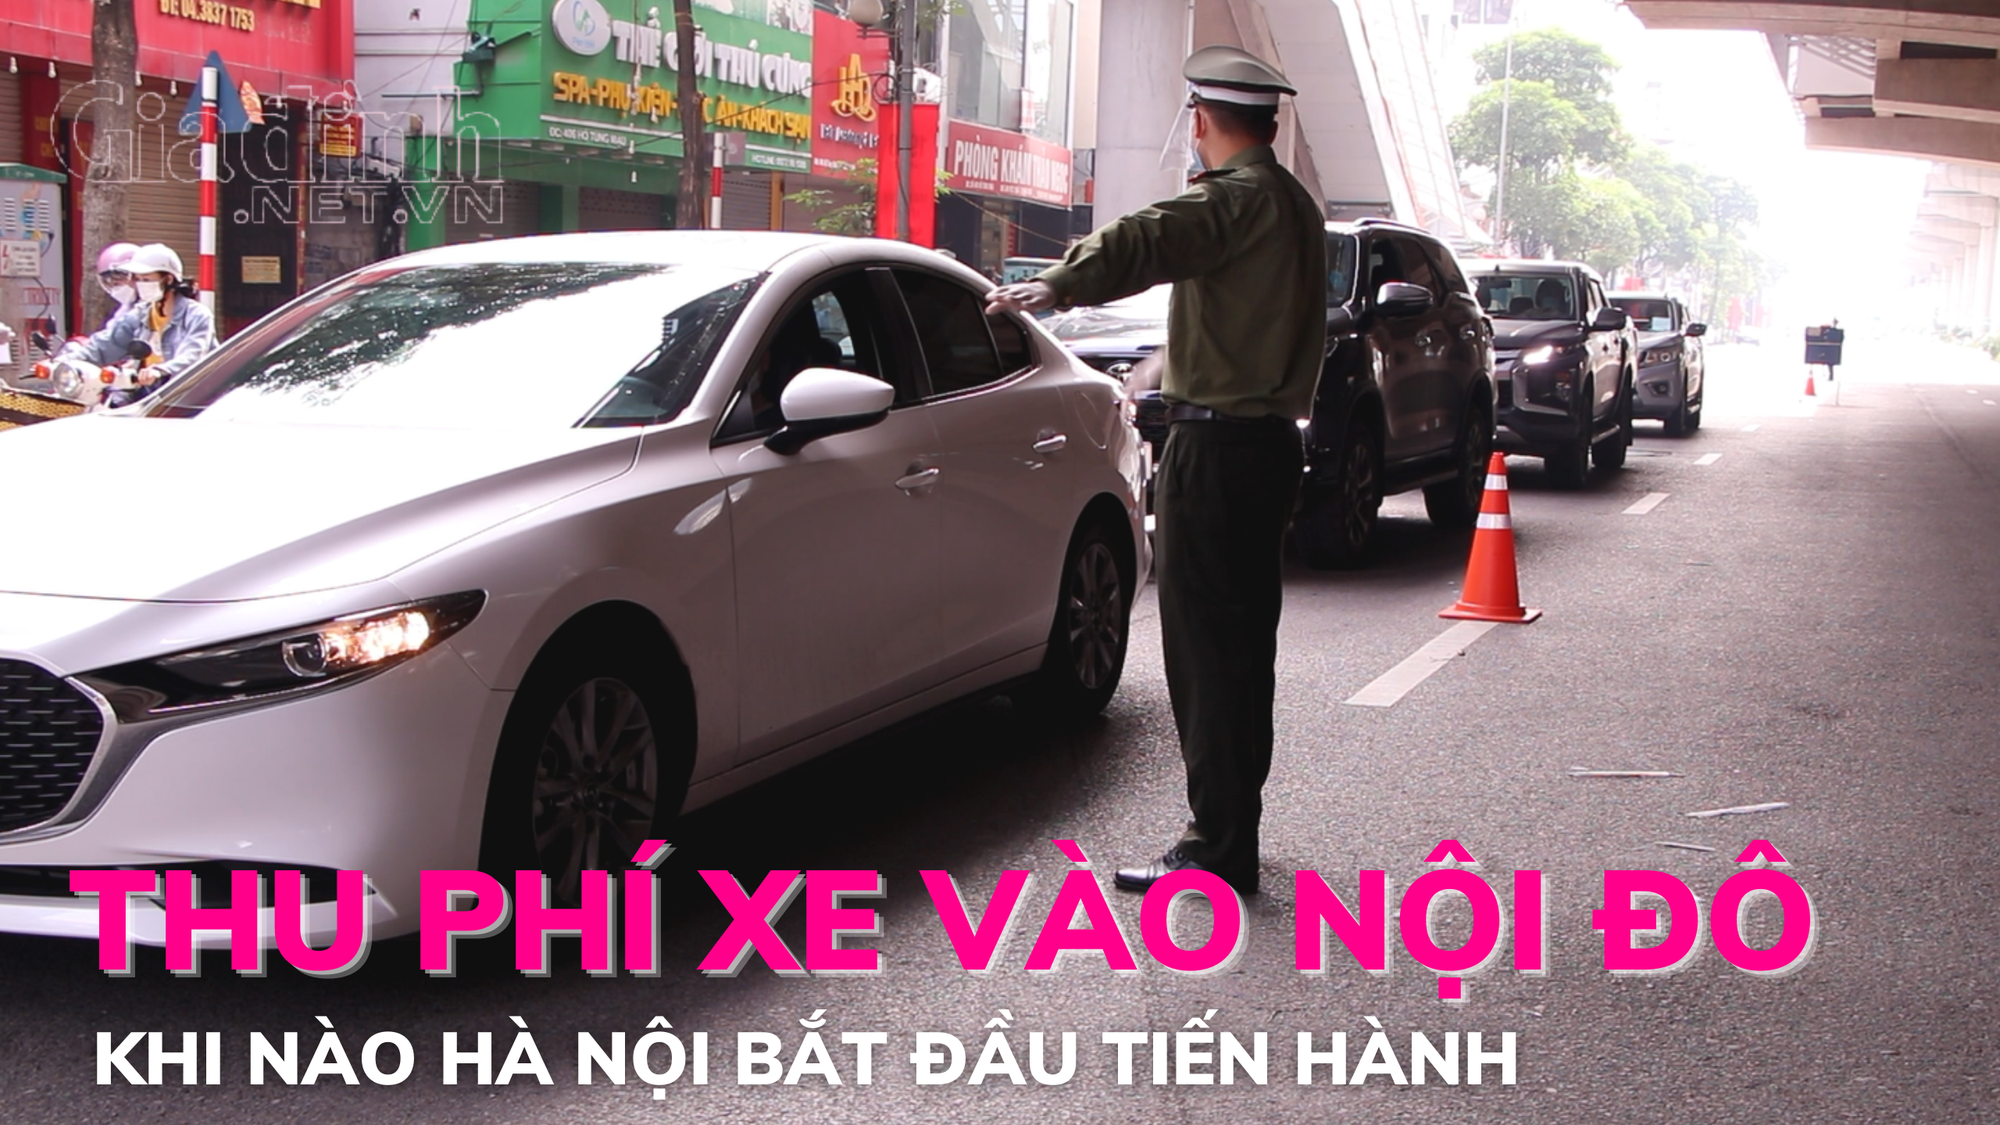 Khi nào Hà Nội bắt đầu thu phí xe vào nội đô